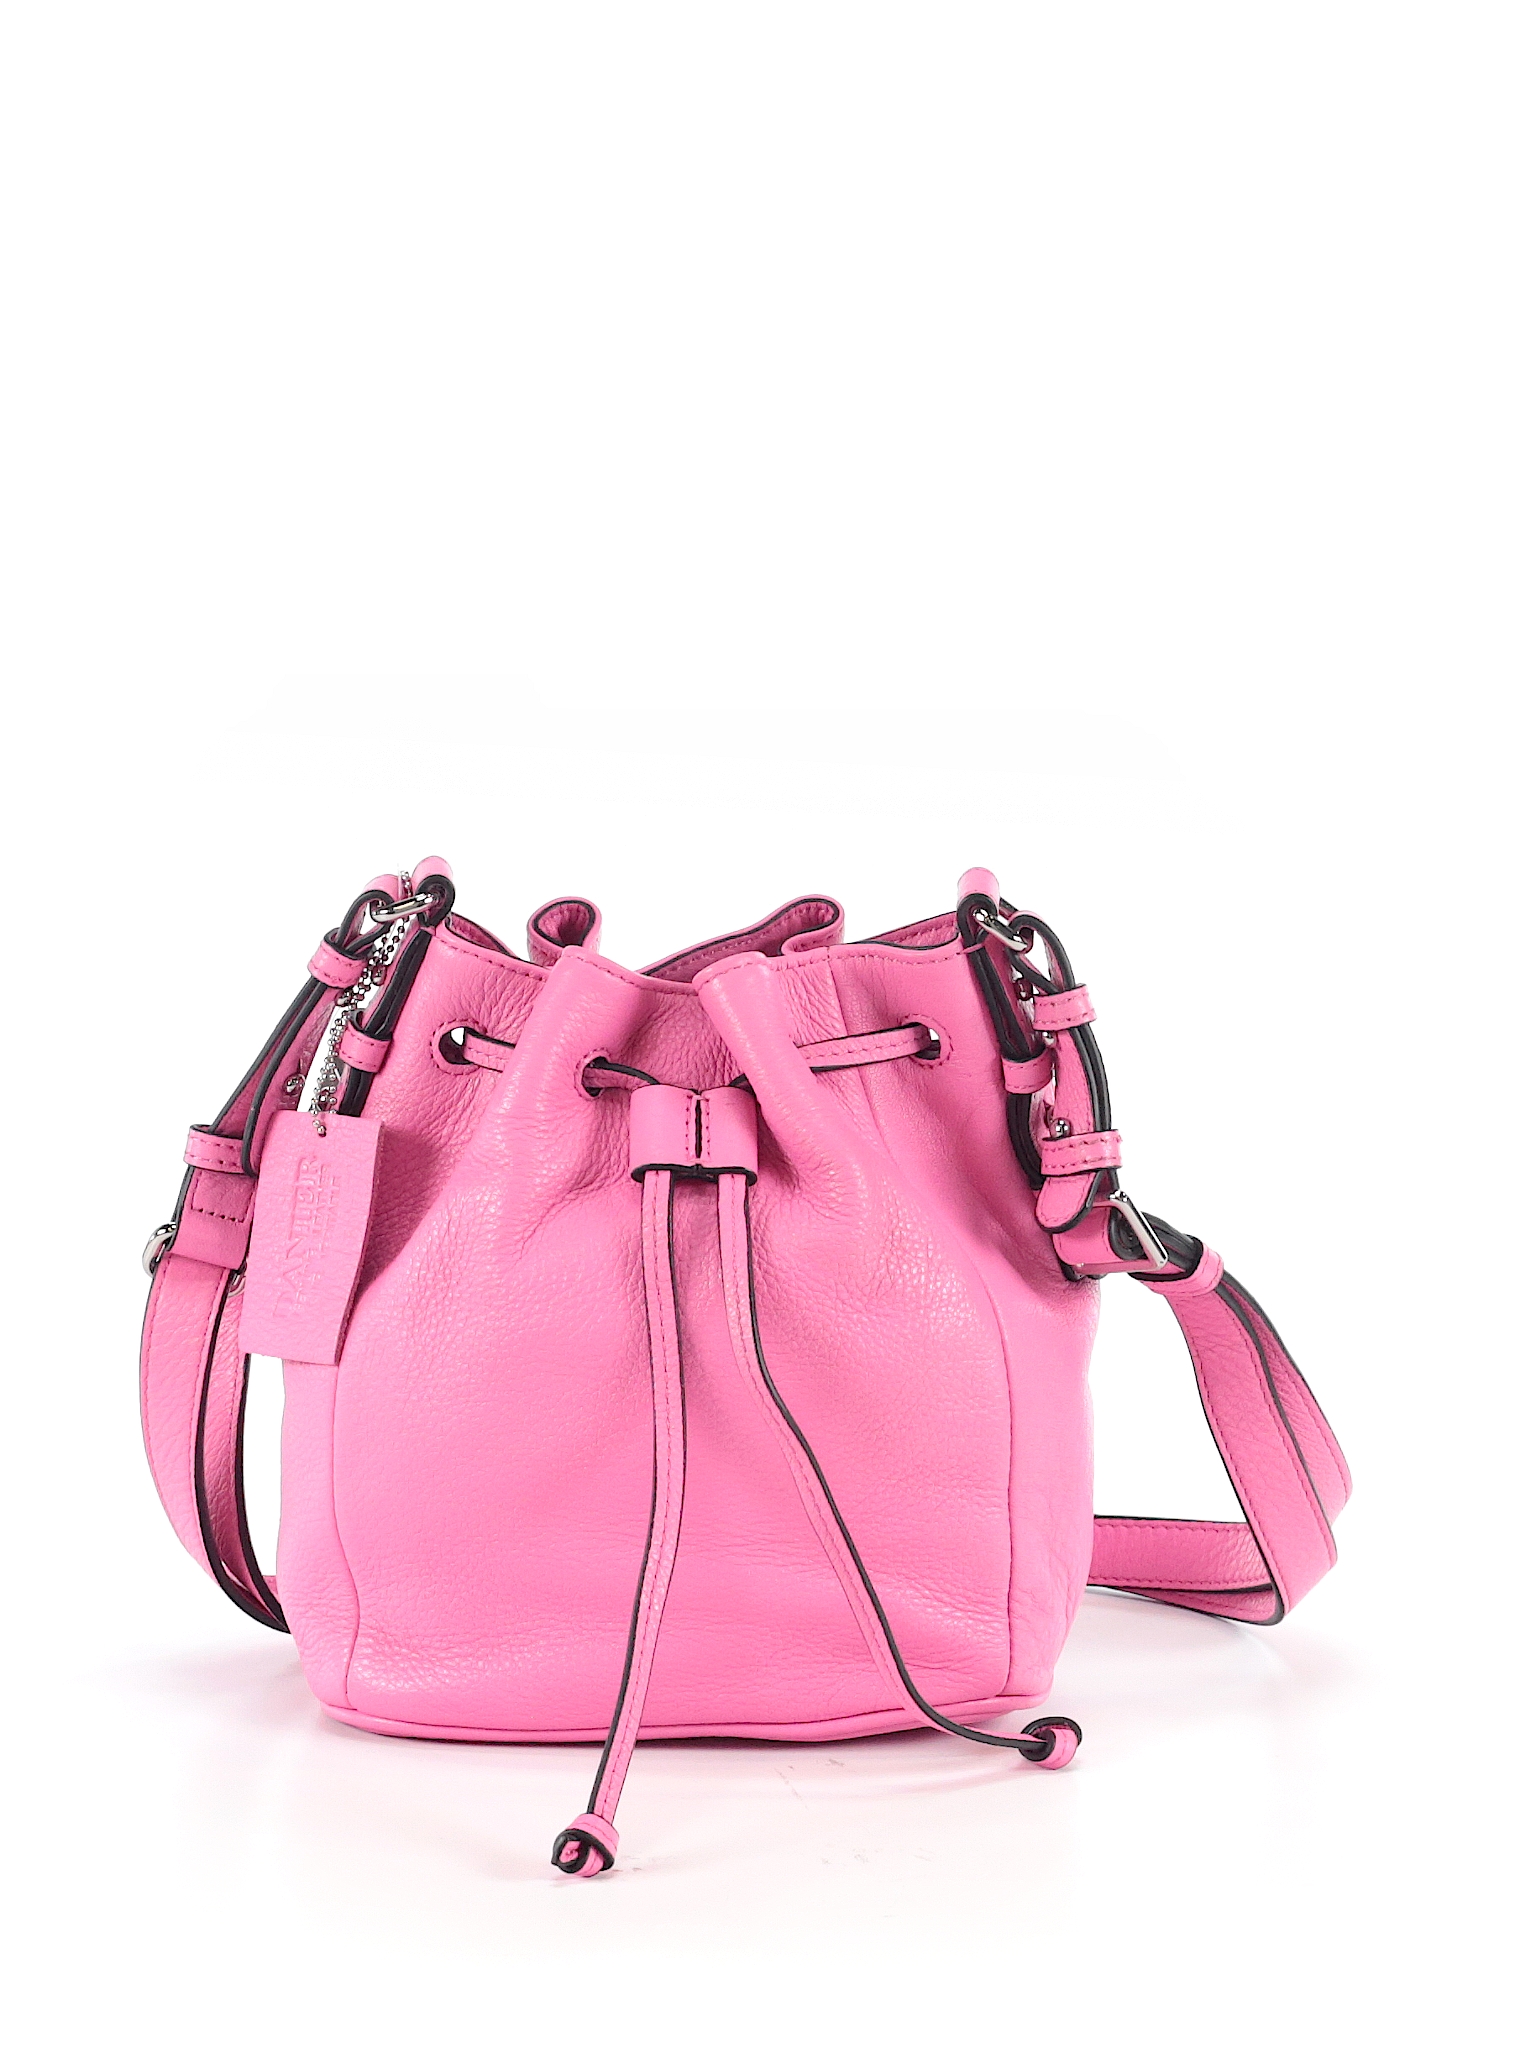 DANIER Solid Light Pink Leather Shoulder Bag One Size - 53% off | thredUP